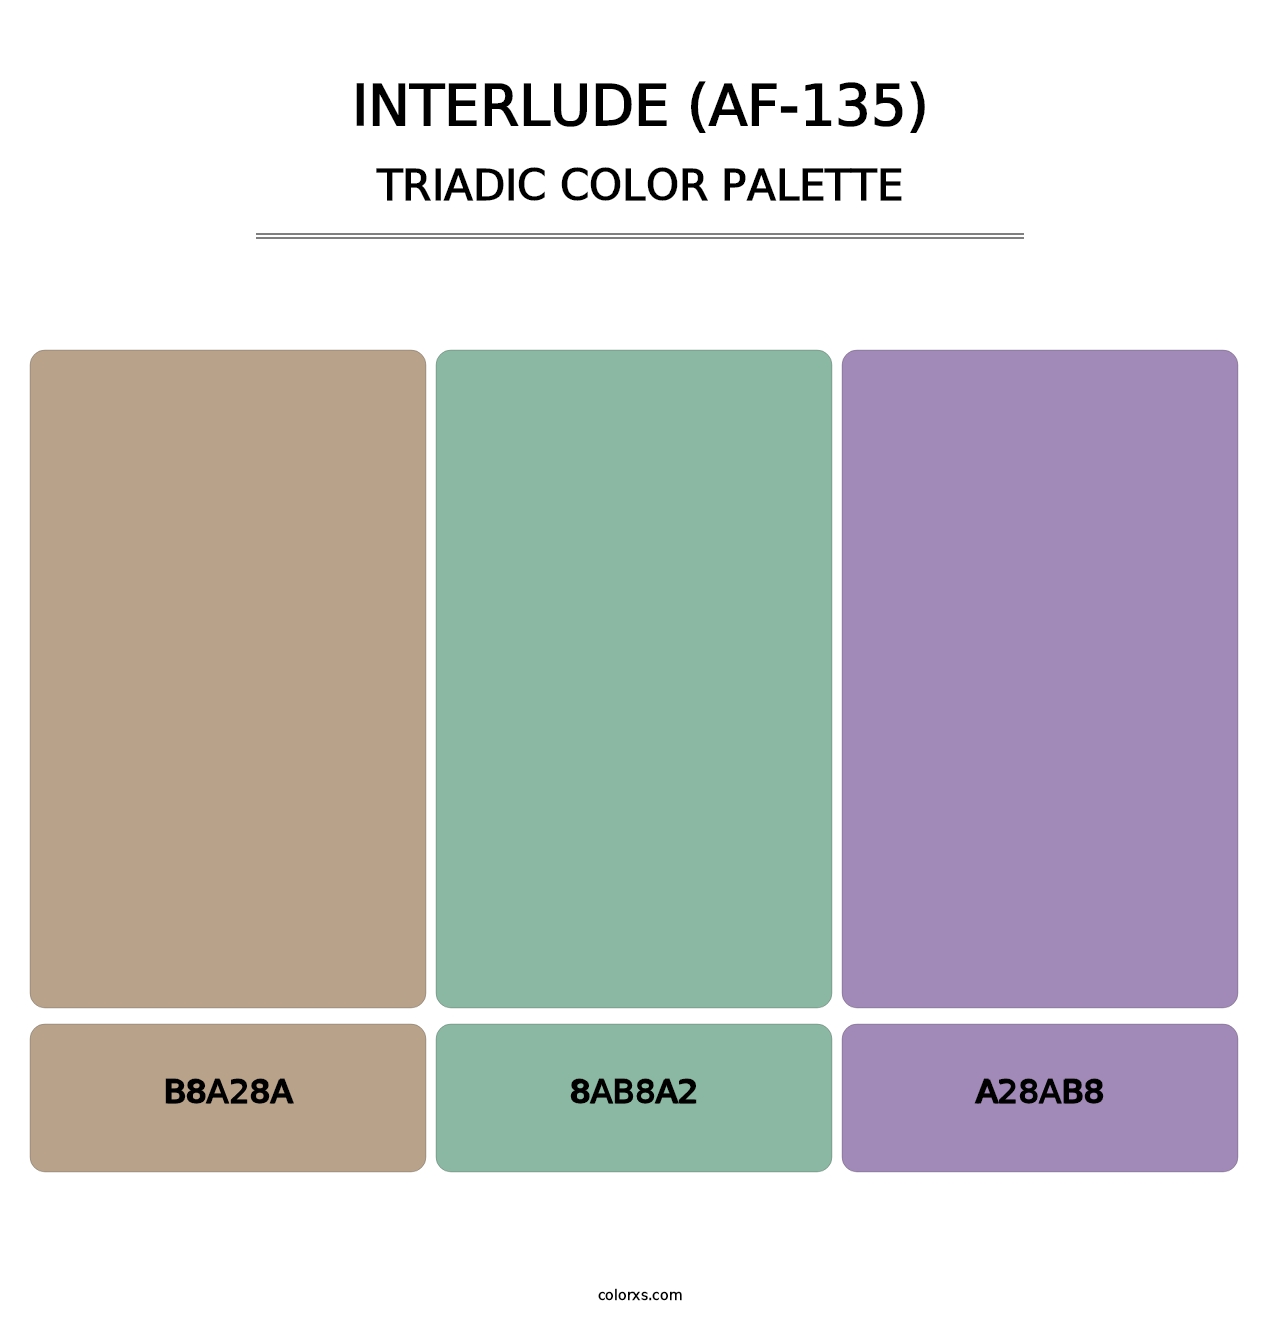 Interlude (AF-135) - Triadic Color Palette